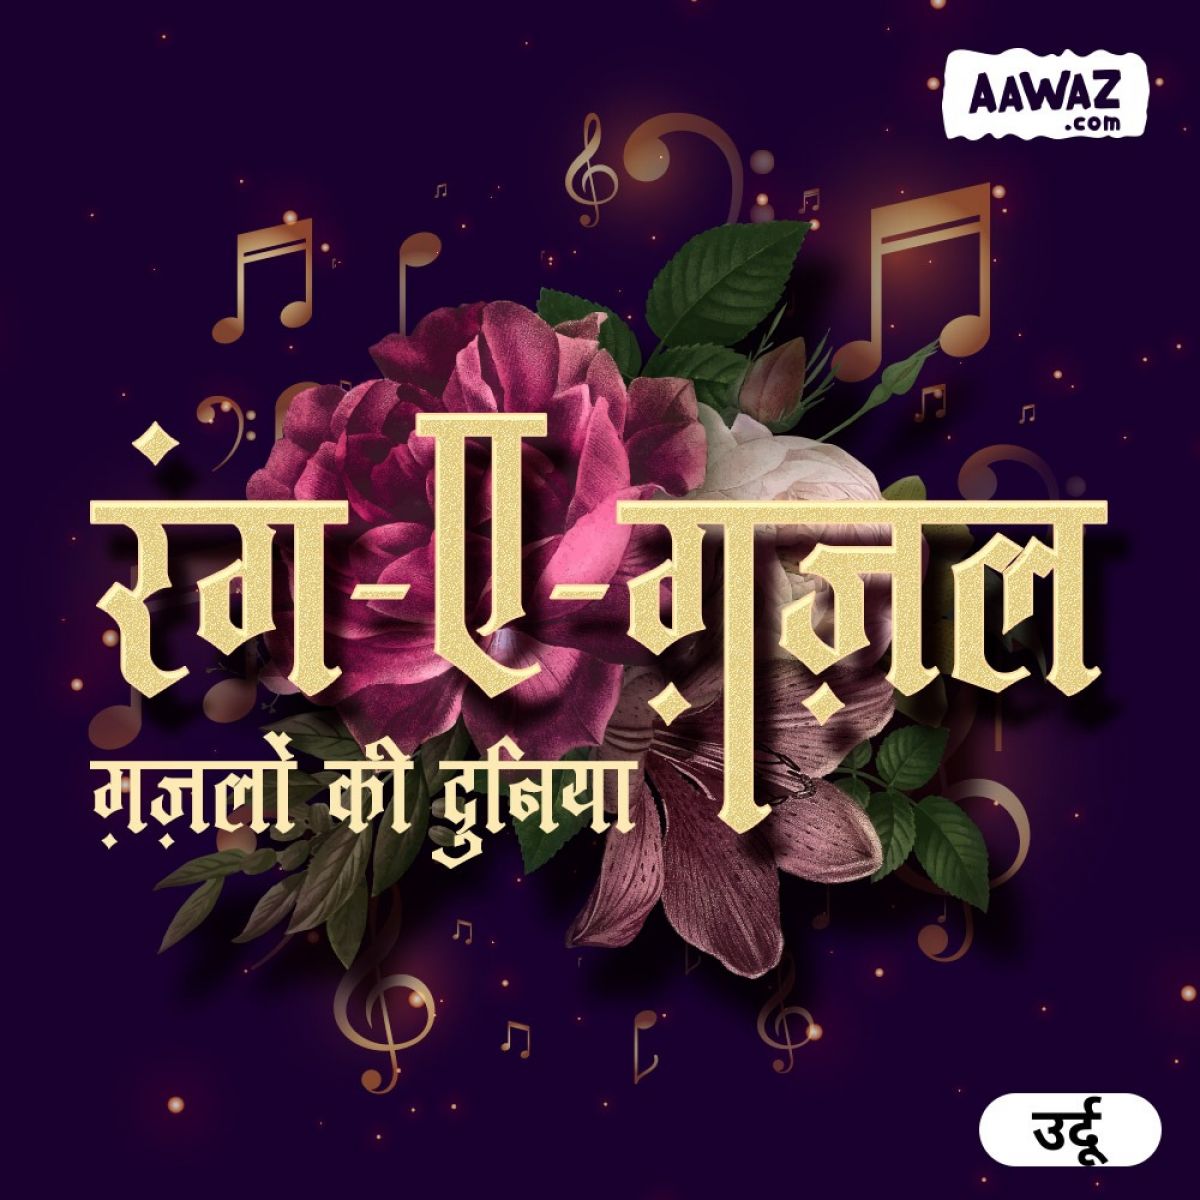 aawaz.com ऑडियो का अपना उर्दू संस्करण लॉन्च किया